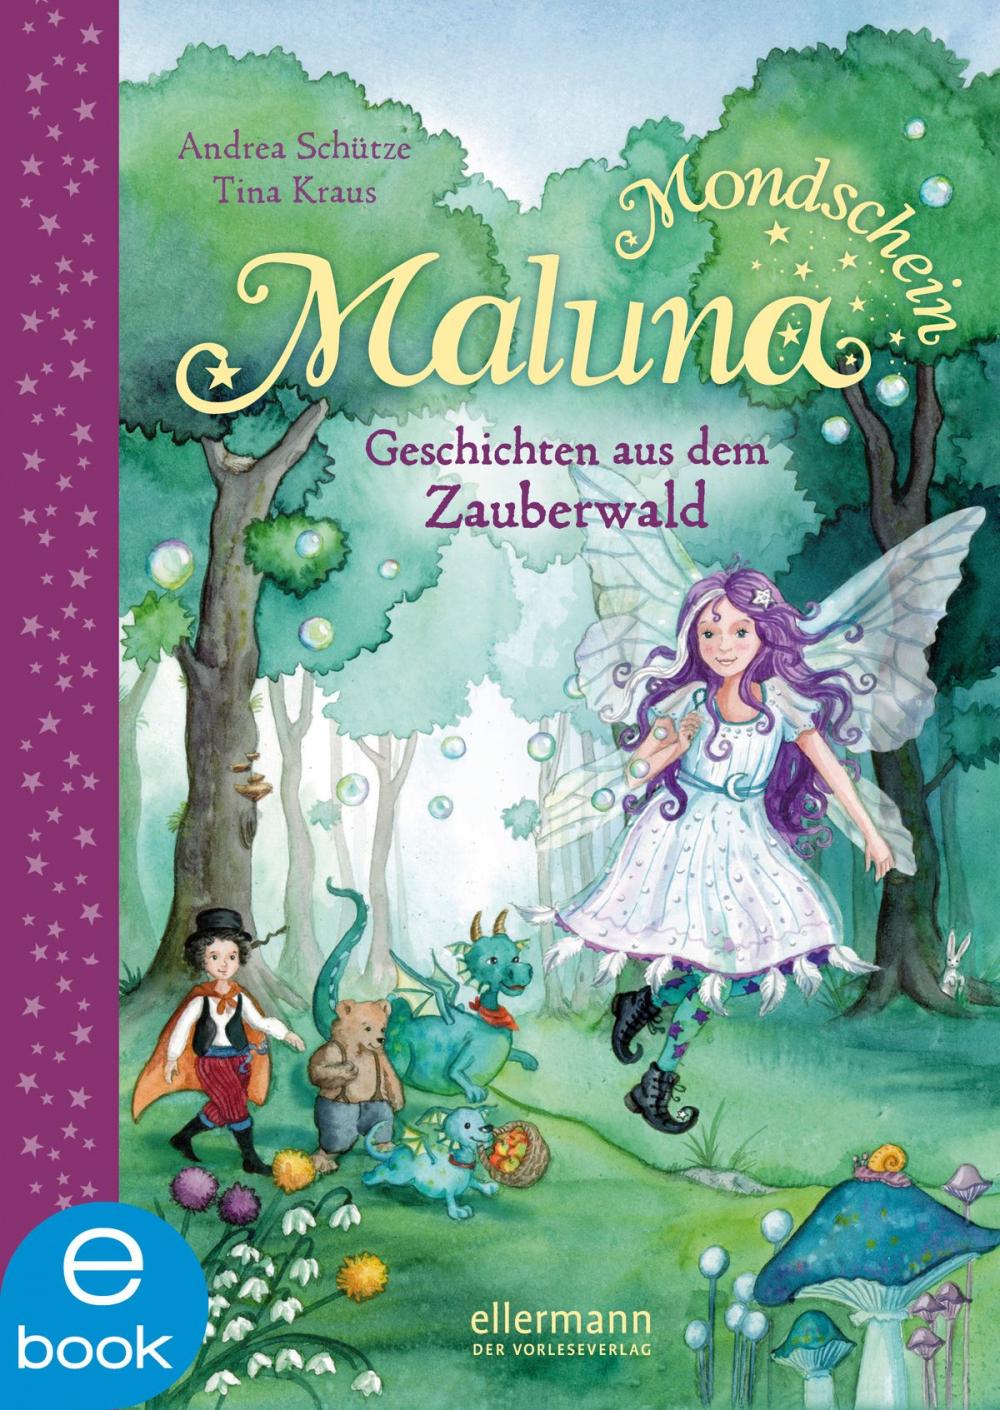 Big bigCover of Maluna Mondschein - Geschichten aus dem Zauberwald